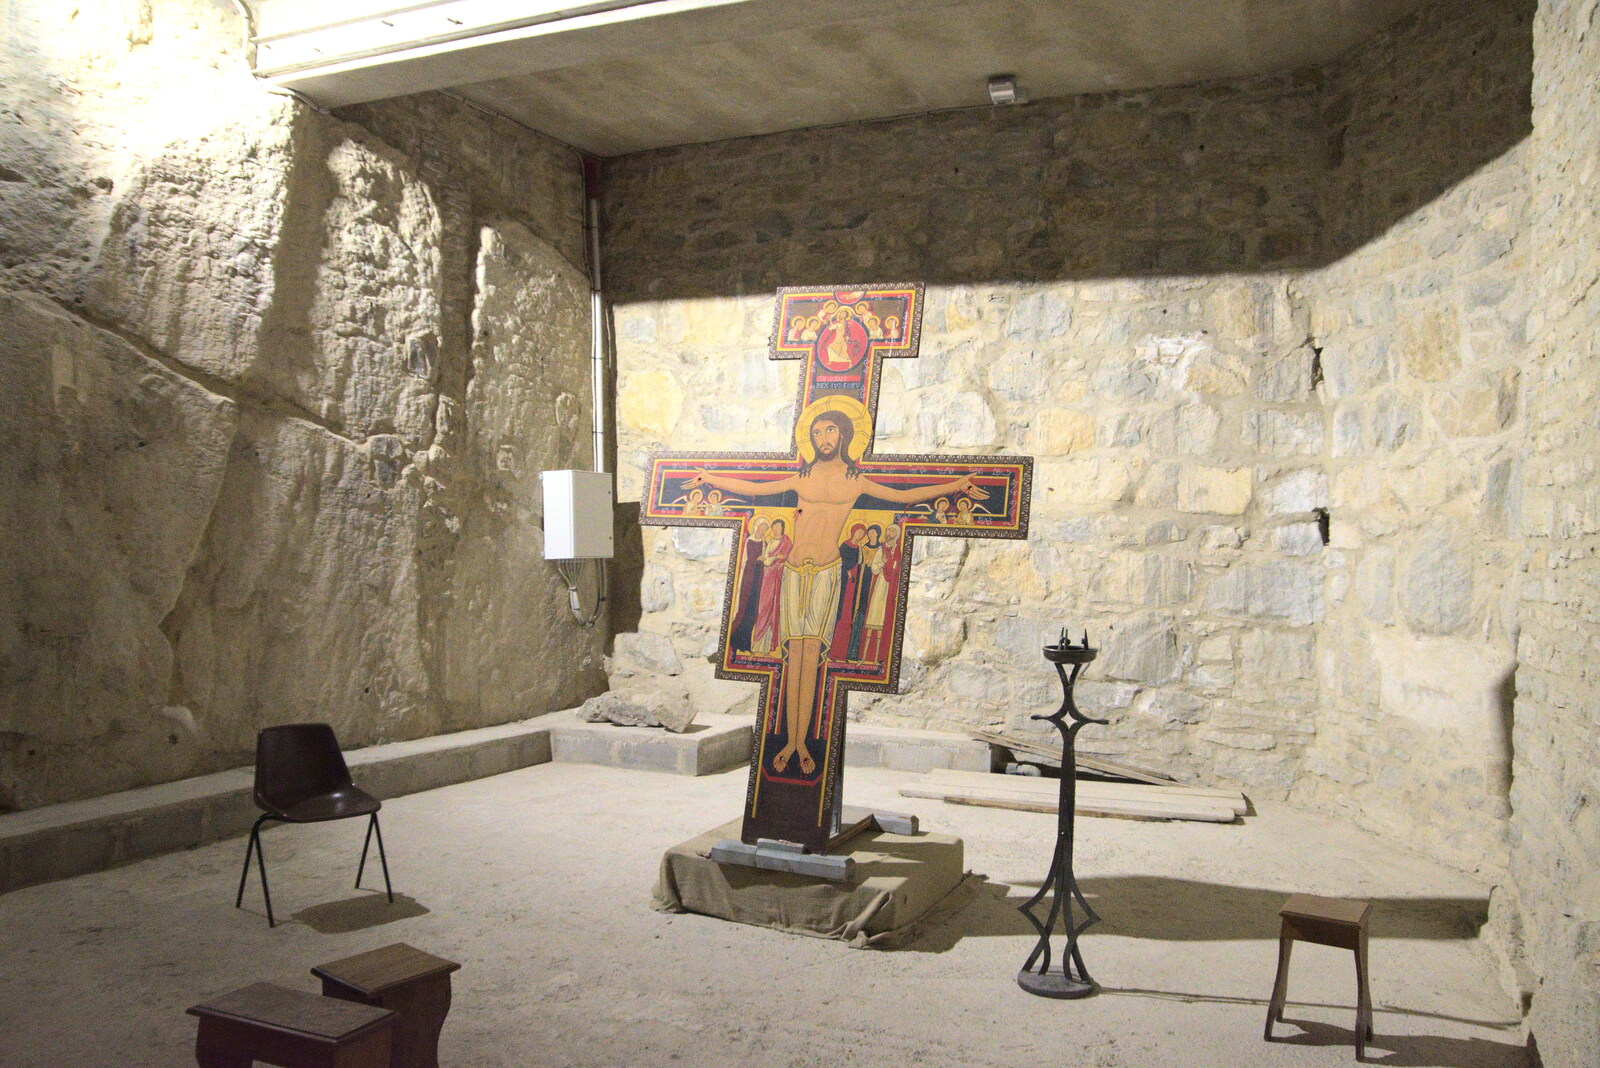 Castiglio Del Lago and Santuario della Verna, Umbria and Tuscany, Italy - 1st September 2022: A cross in a basement cave